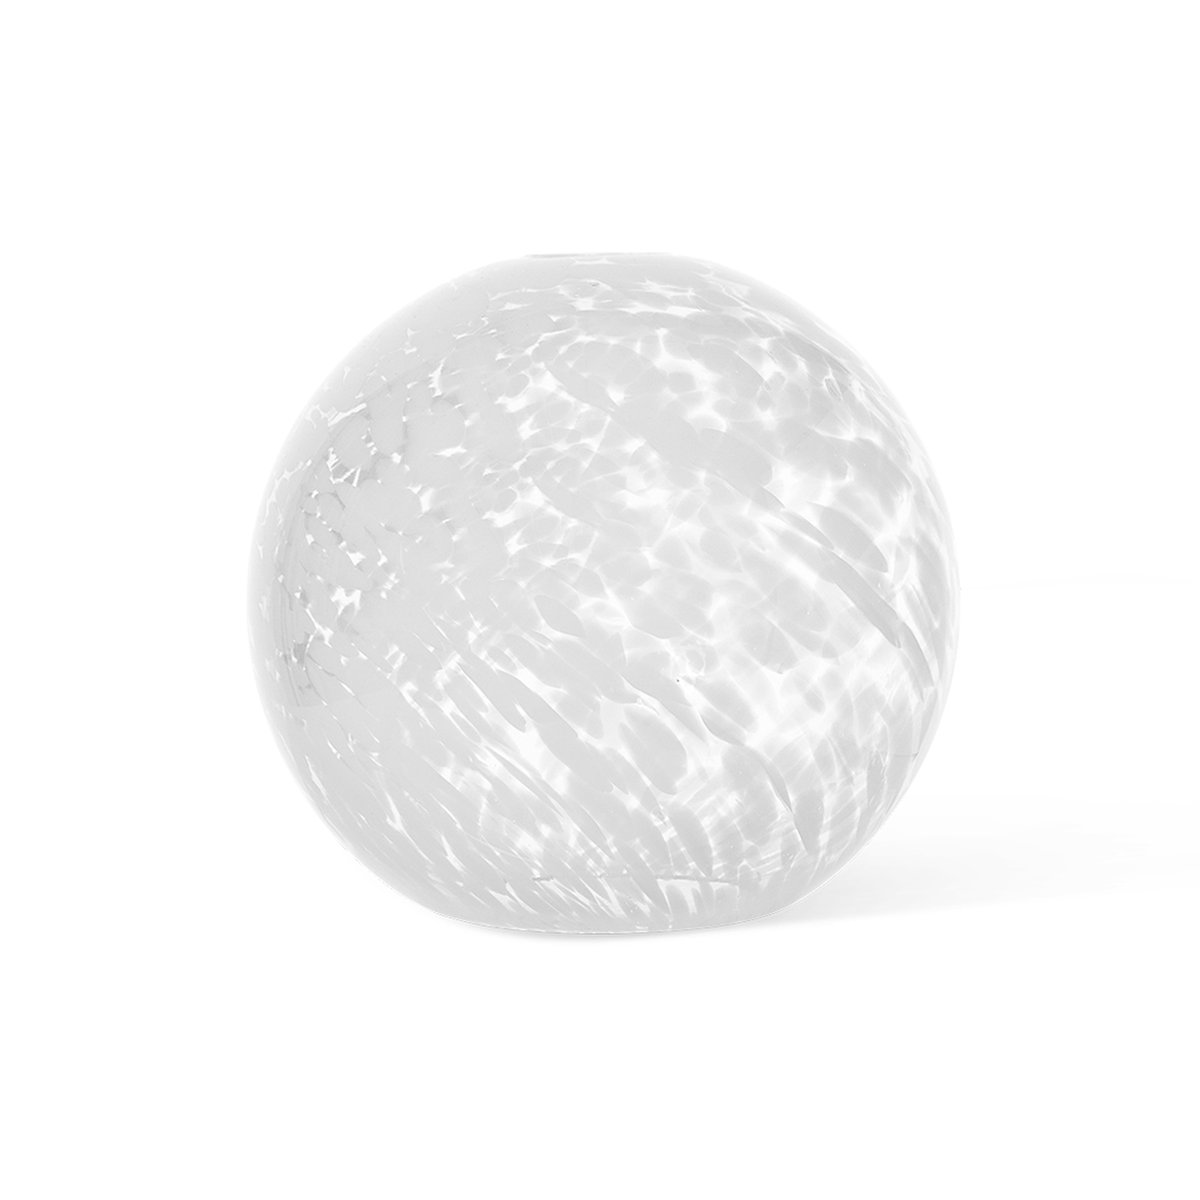 Bilde av ferm LIVING Casca Shade glasskule sphere Ø 25 cm Milk